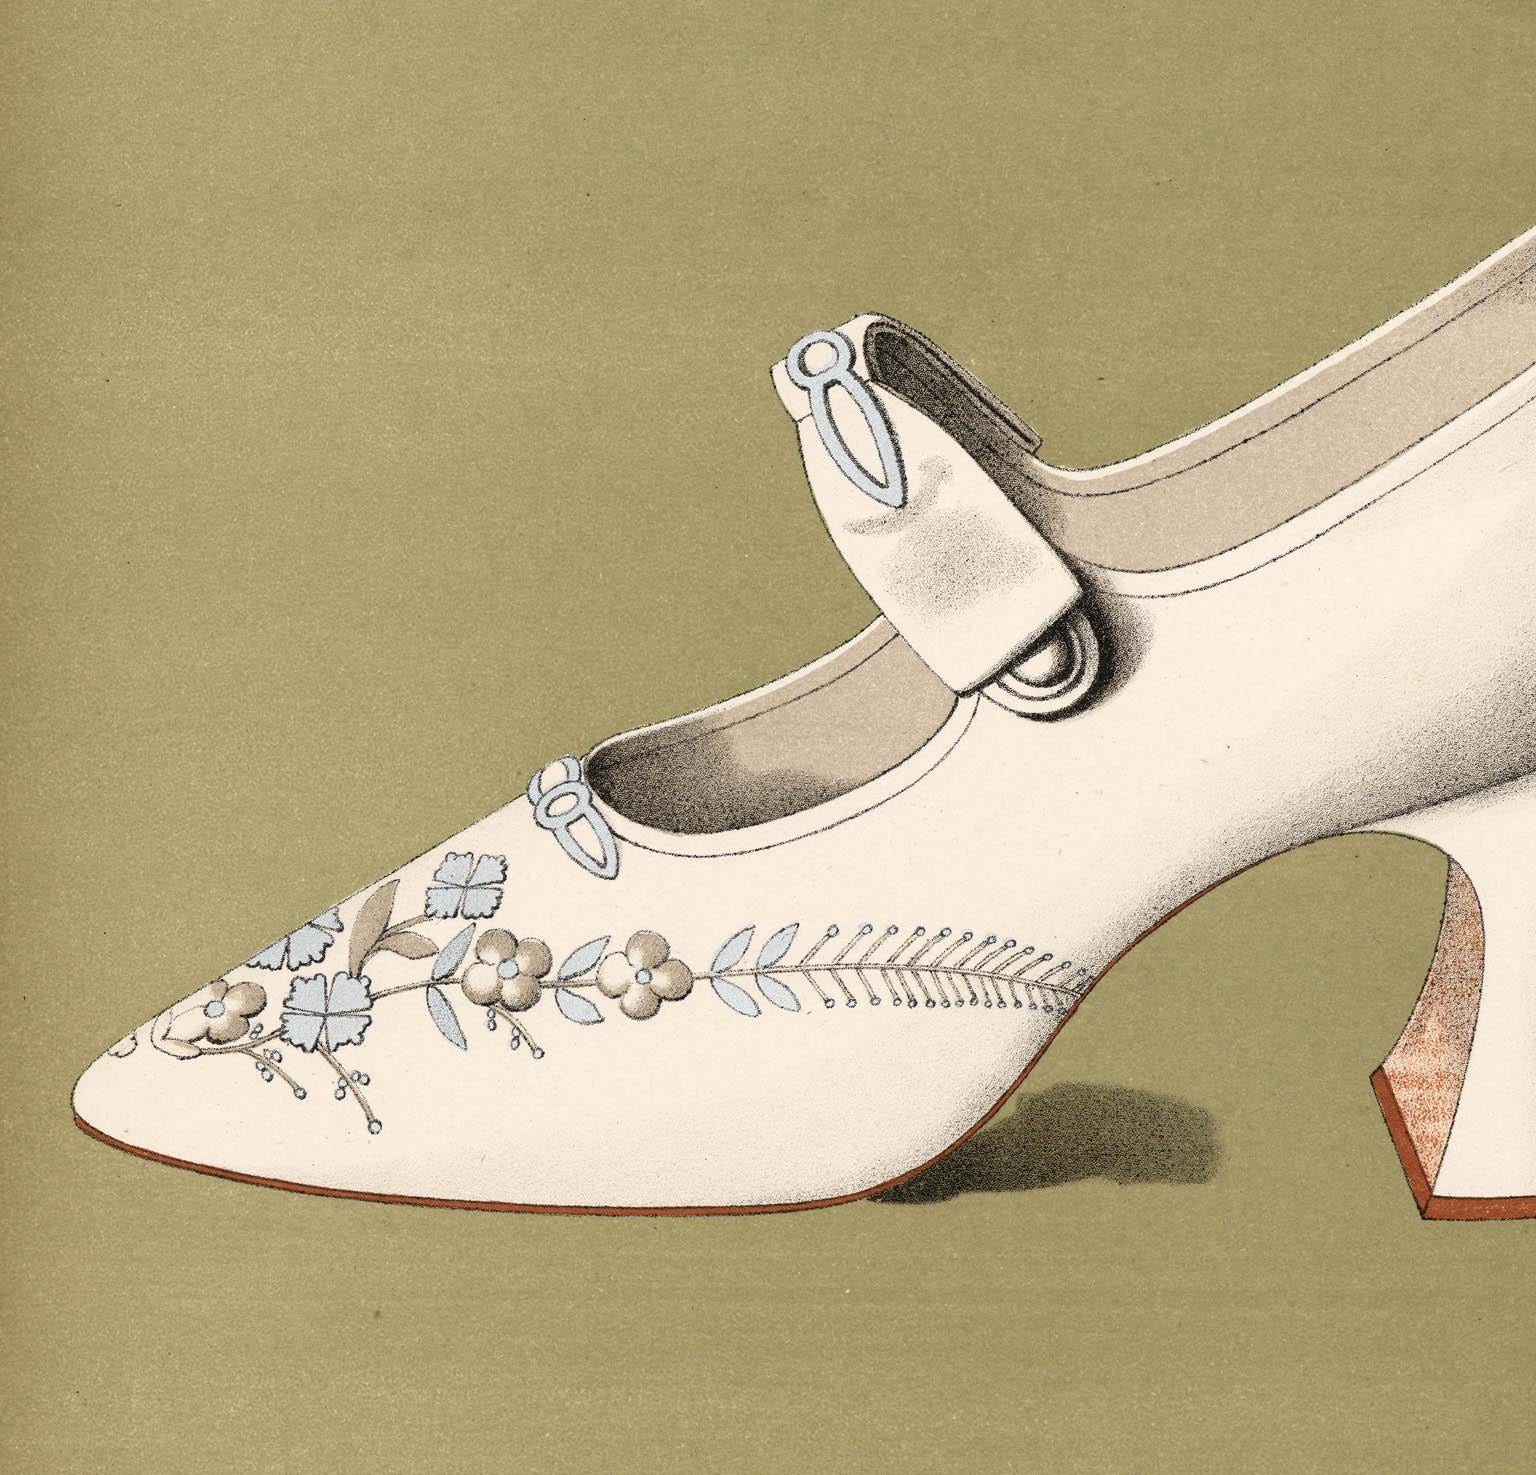 Damen-Kleidschuhe.  Servierteller XII. – Print von T. Watson Greig